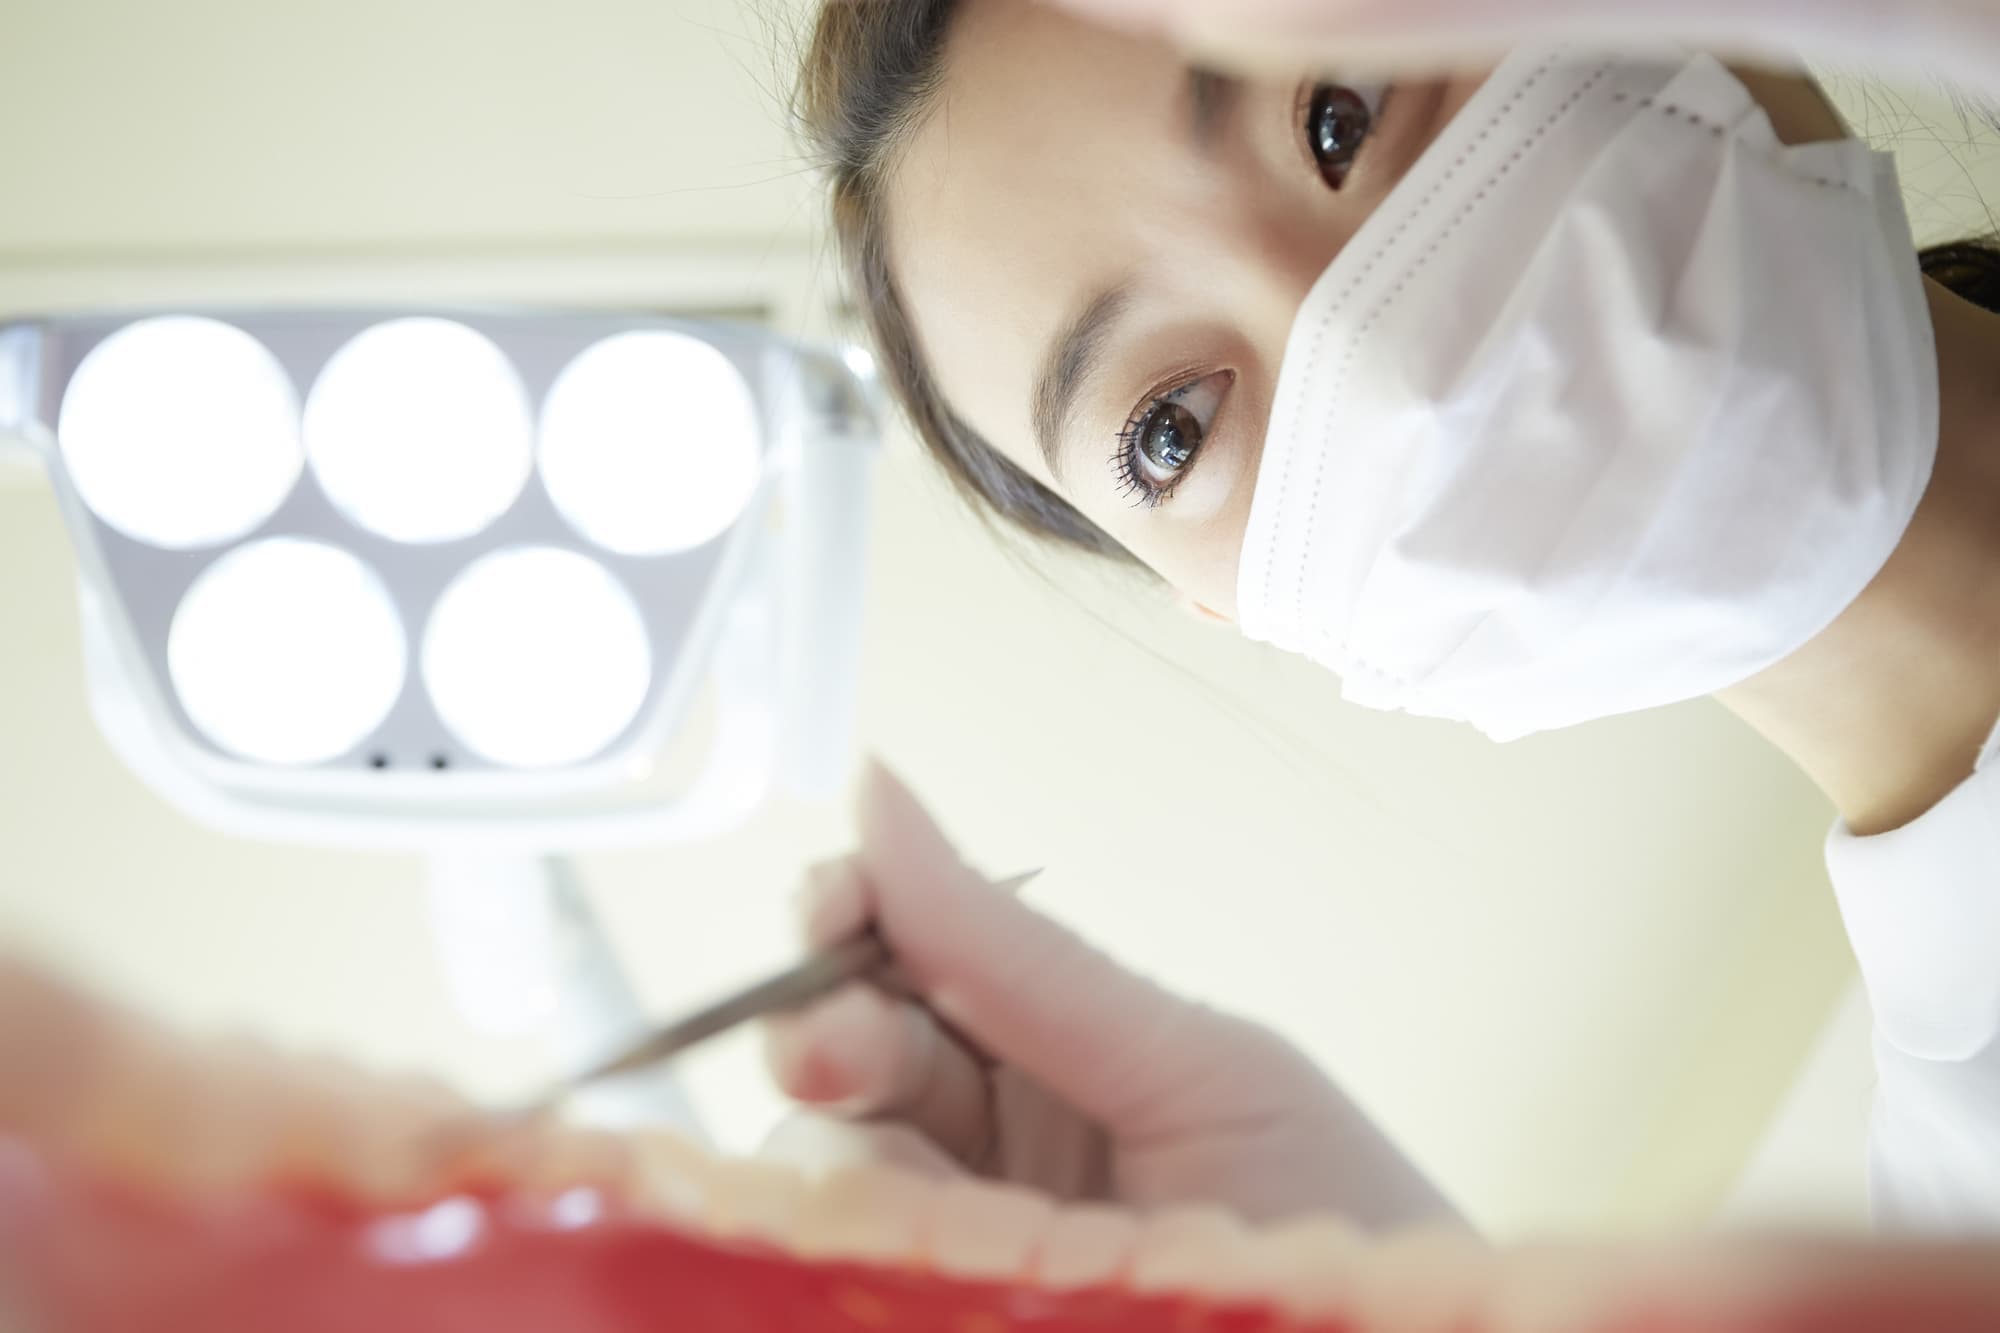 大曲歯科クリニックは残業のない働き方を推奨